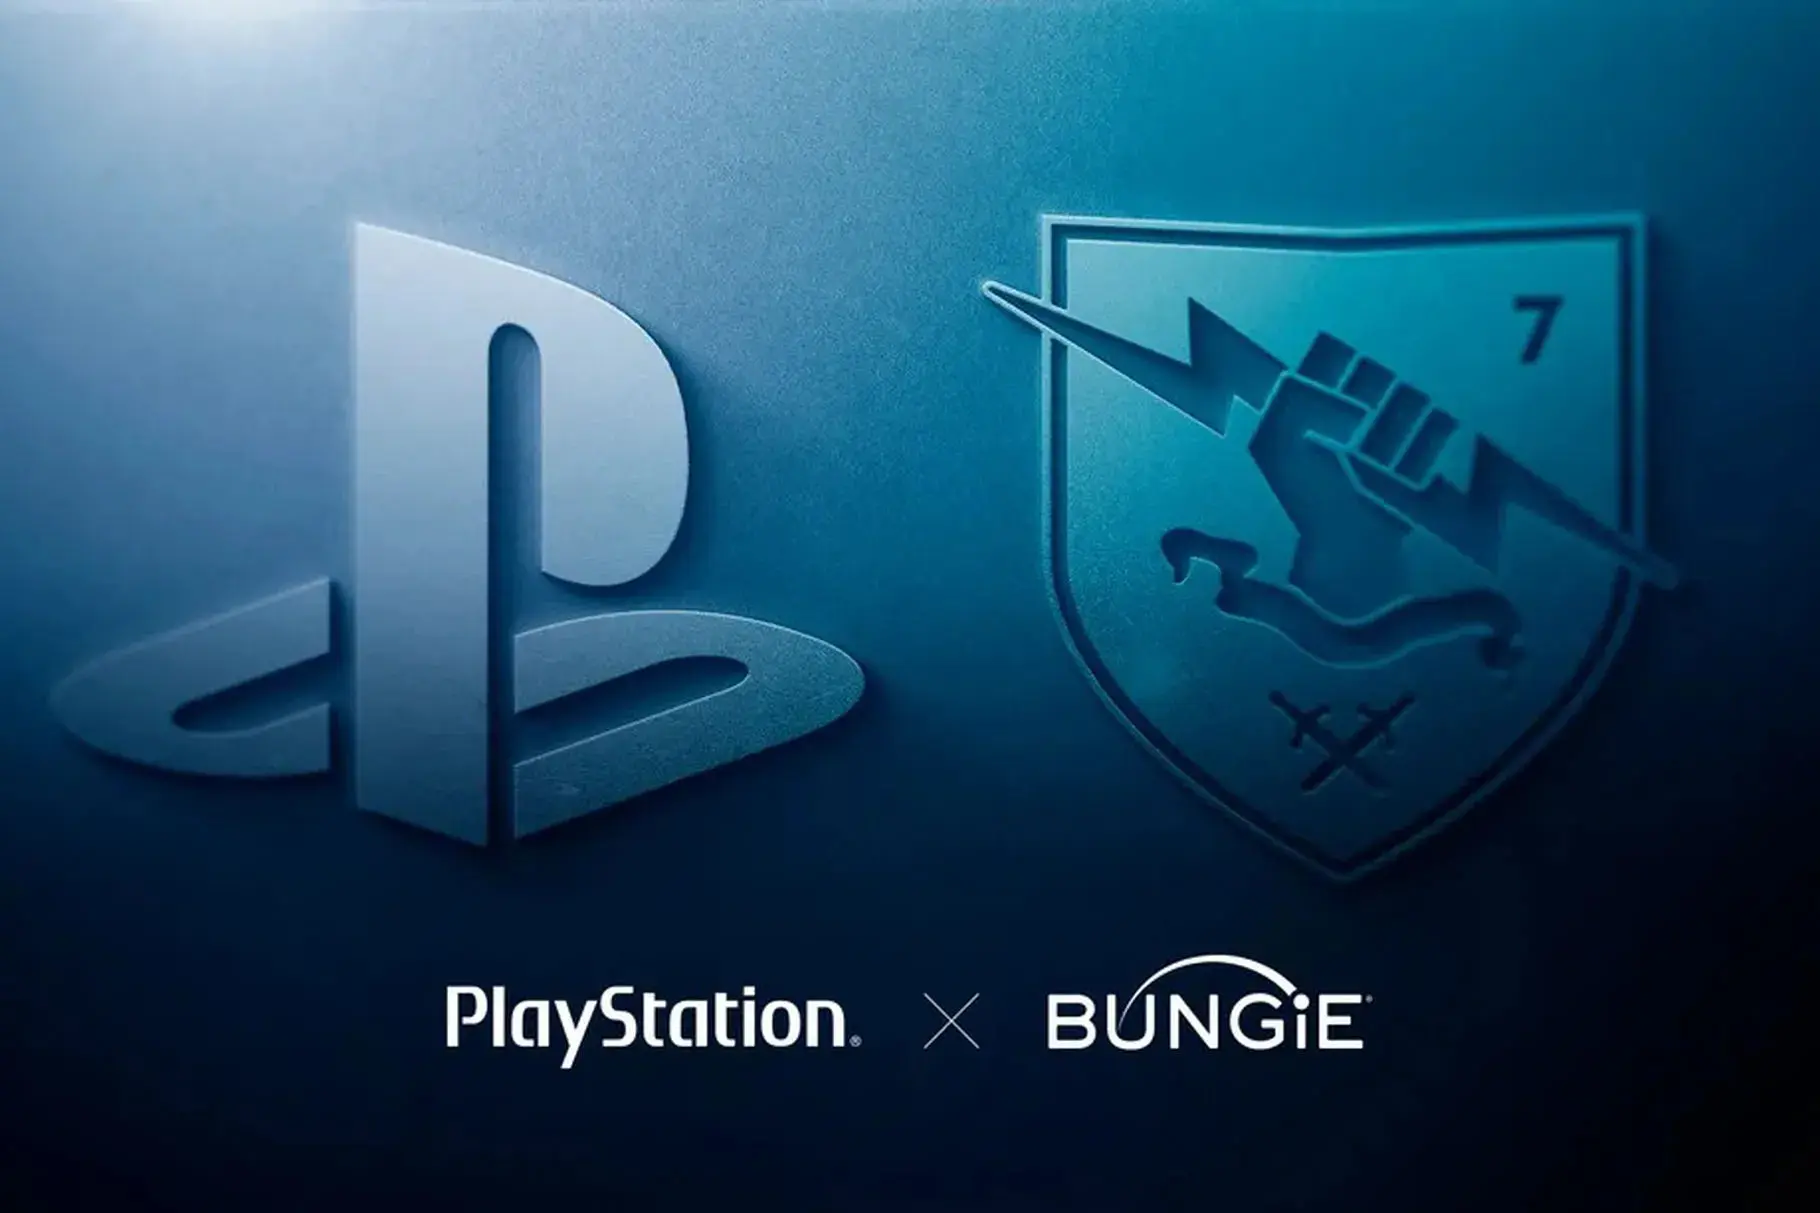 Sony mua lại studio Bungie với giá 3,6 tỷ USD, nhà phát triển game Destiny